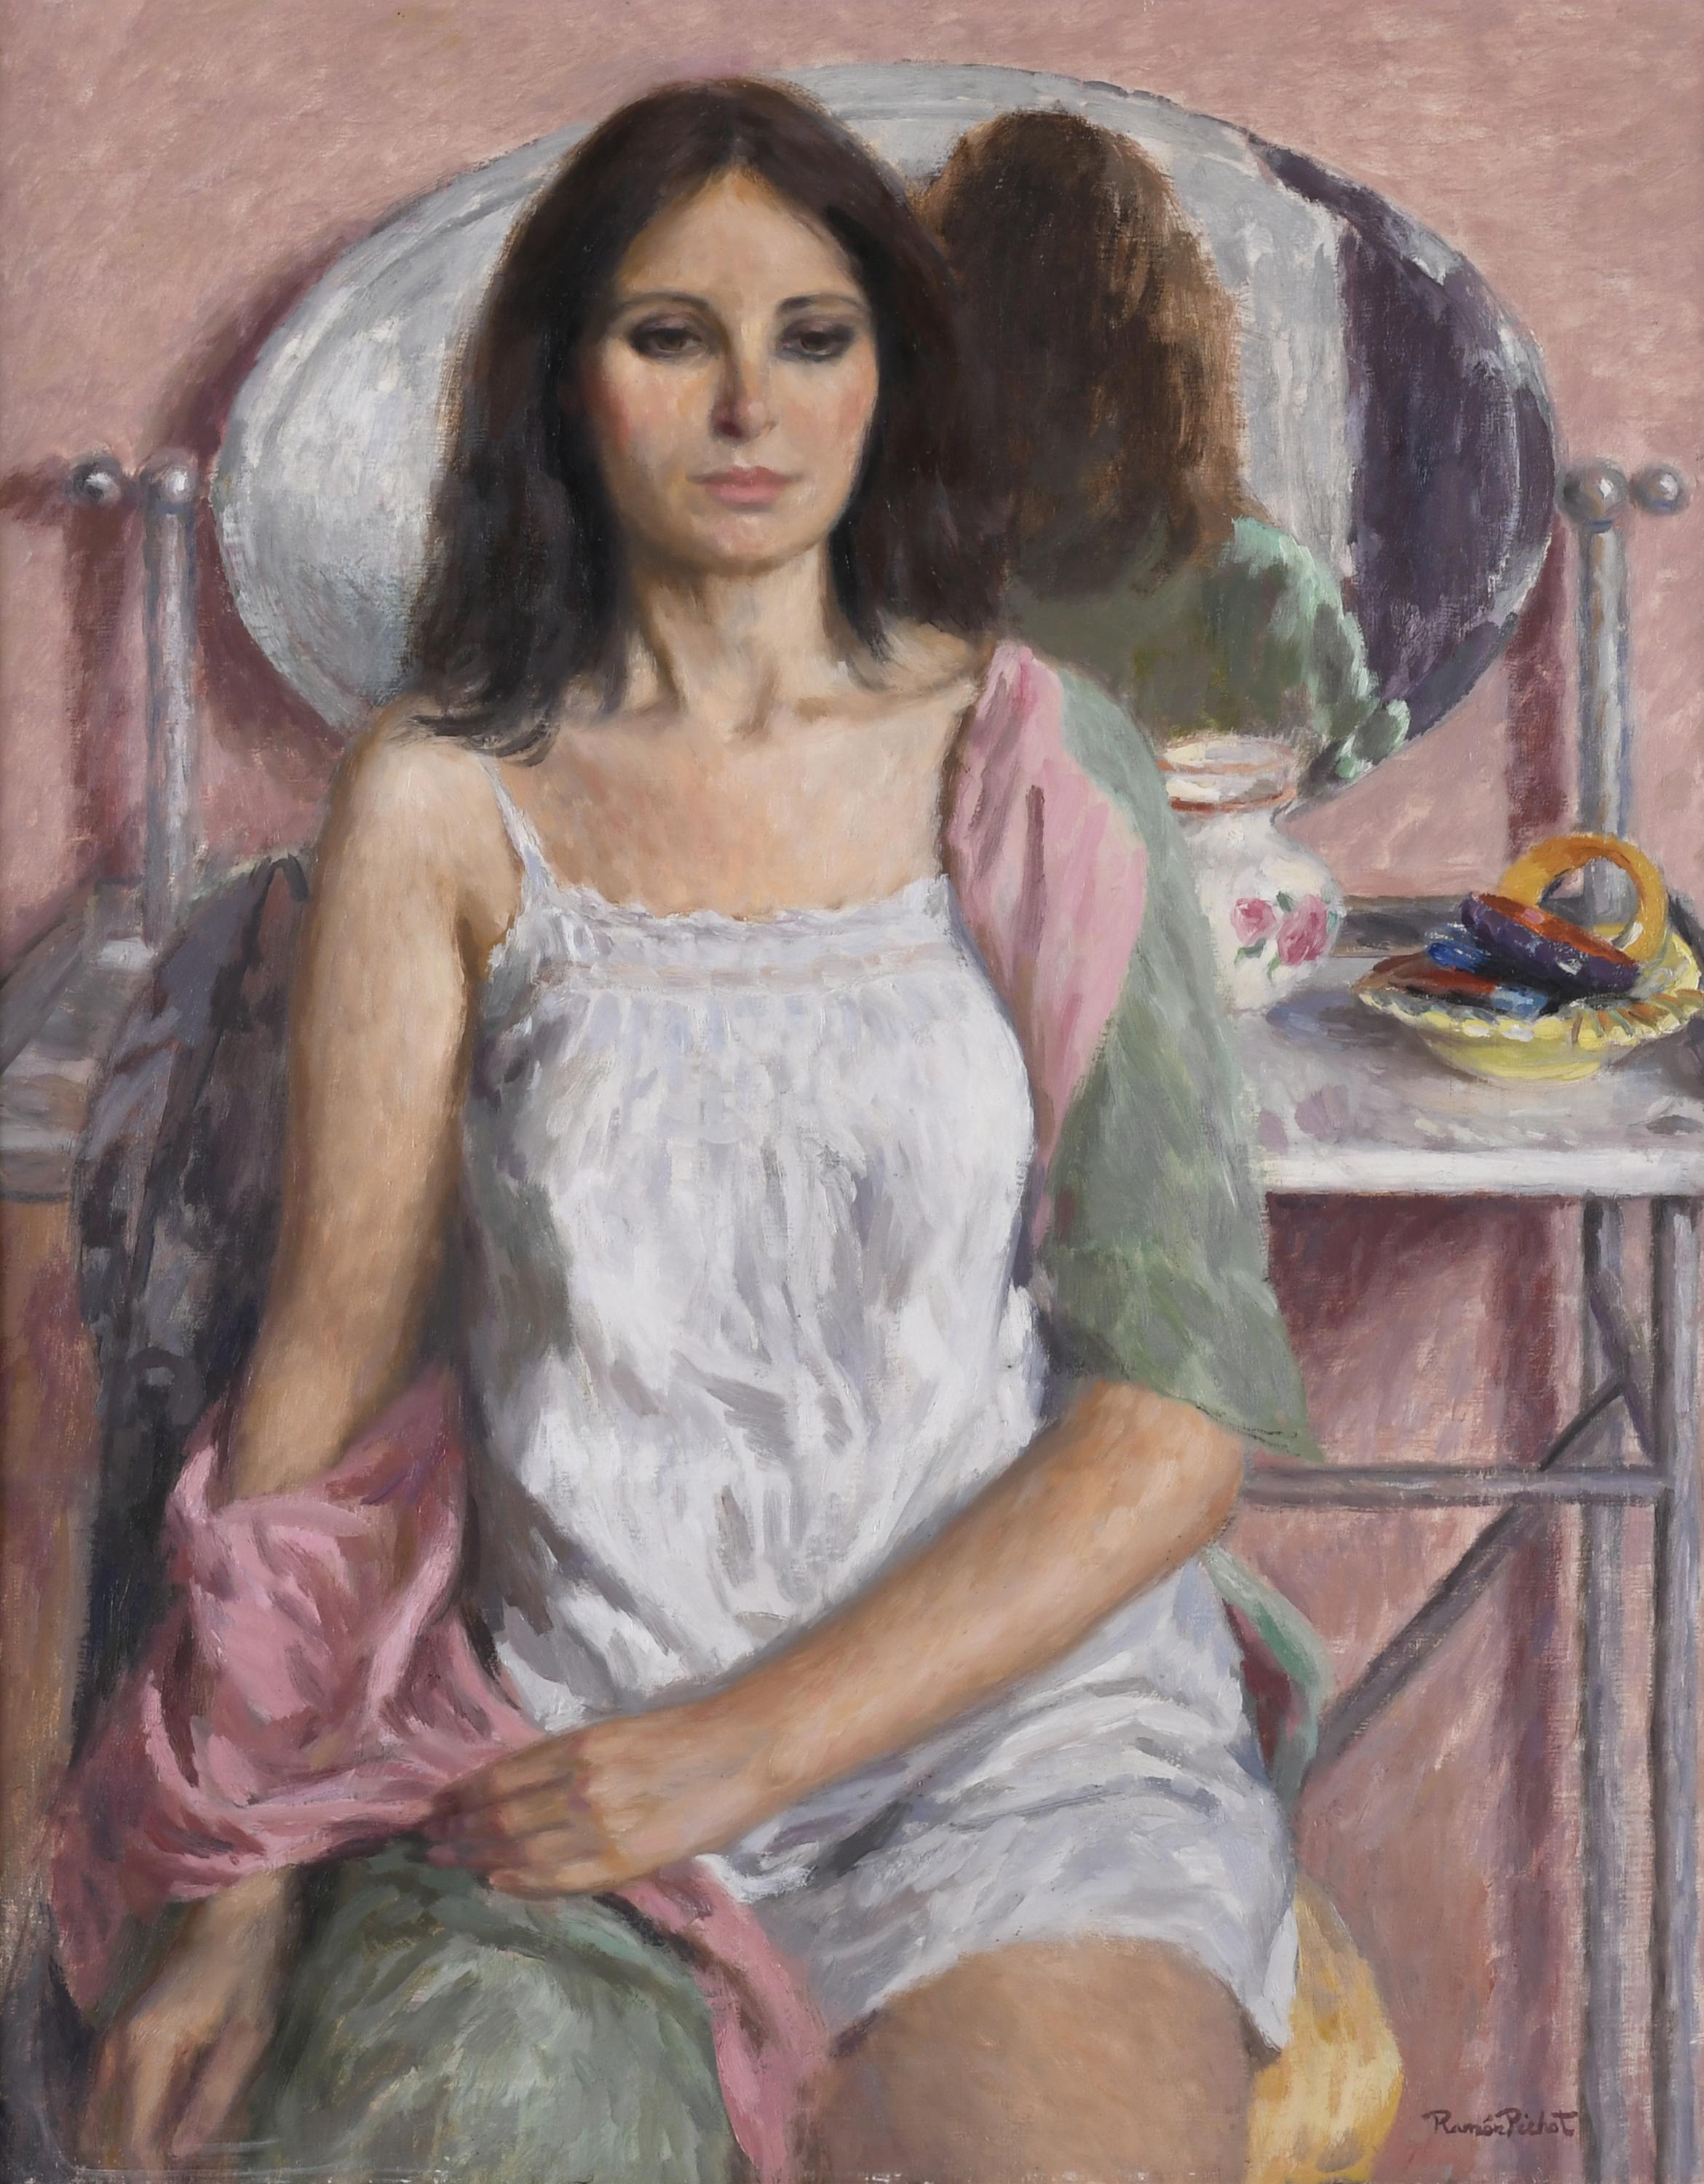 RAMÓN PICHOT SOLER (1924-1996). "FIGURA EN TOCADOR", 1980.